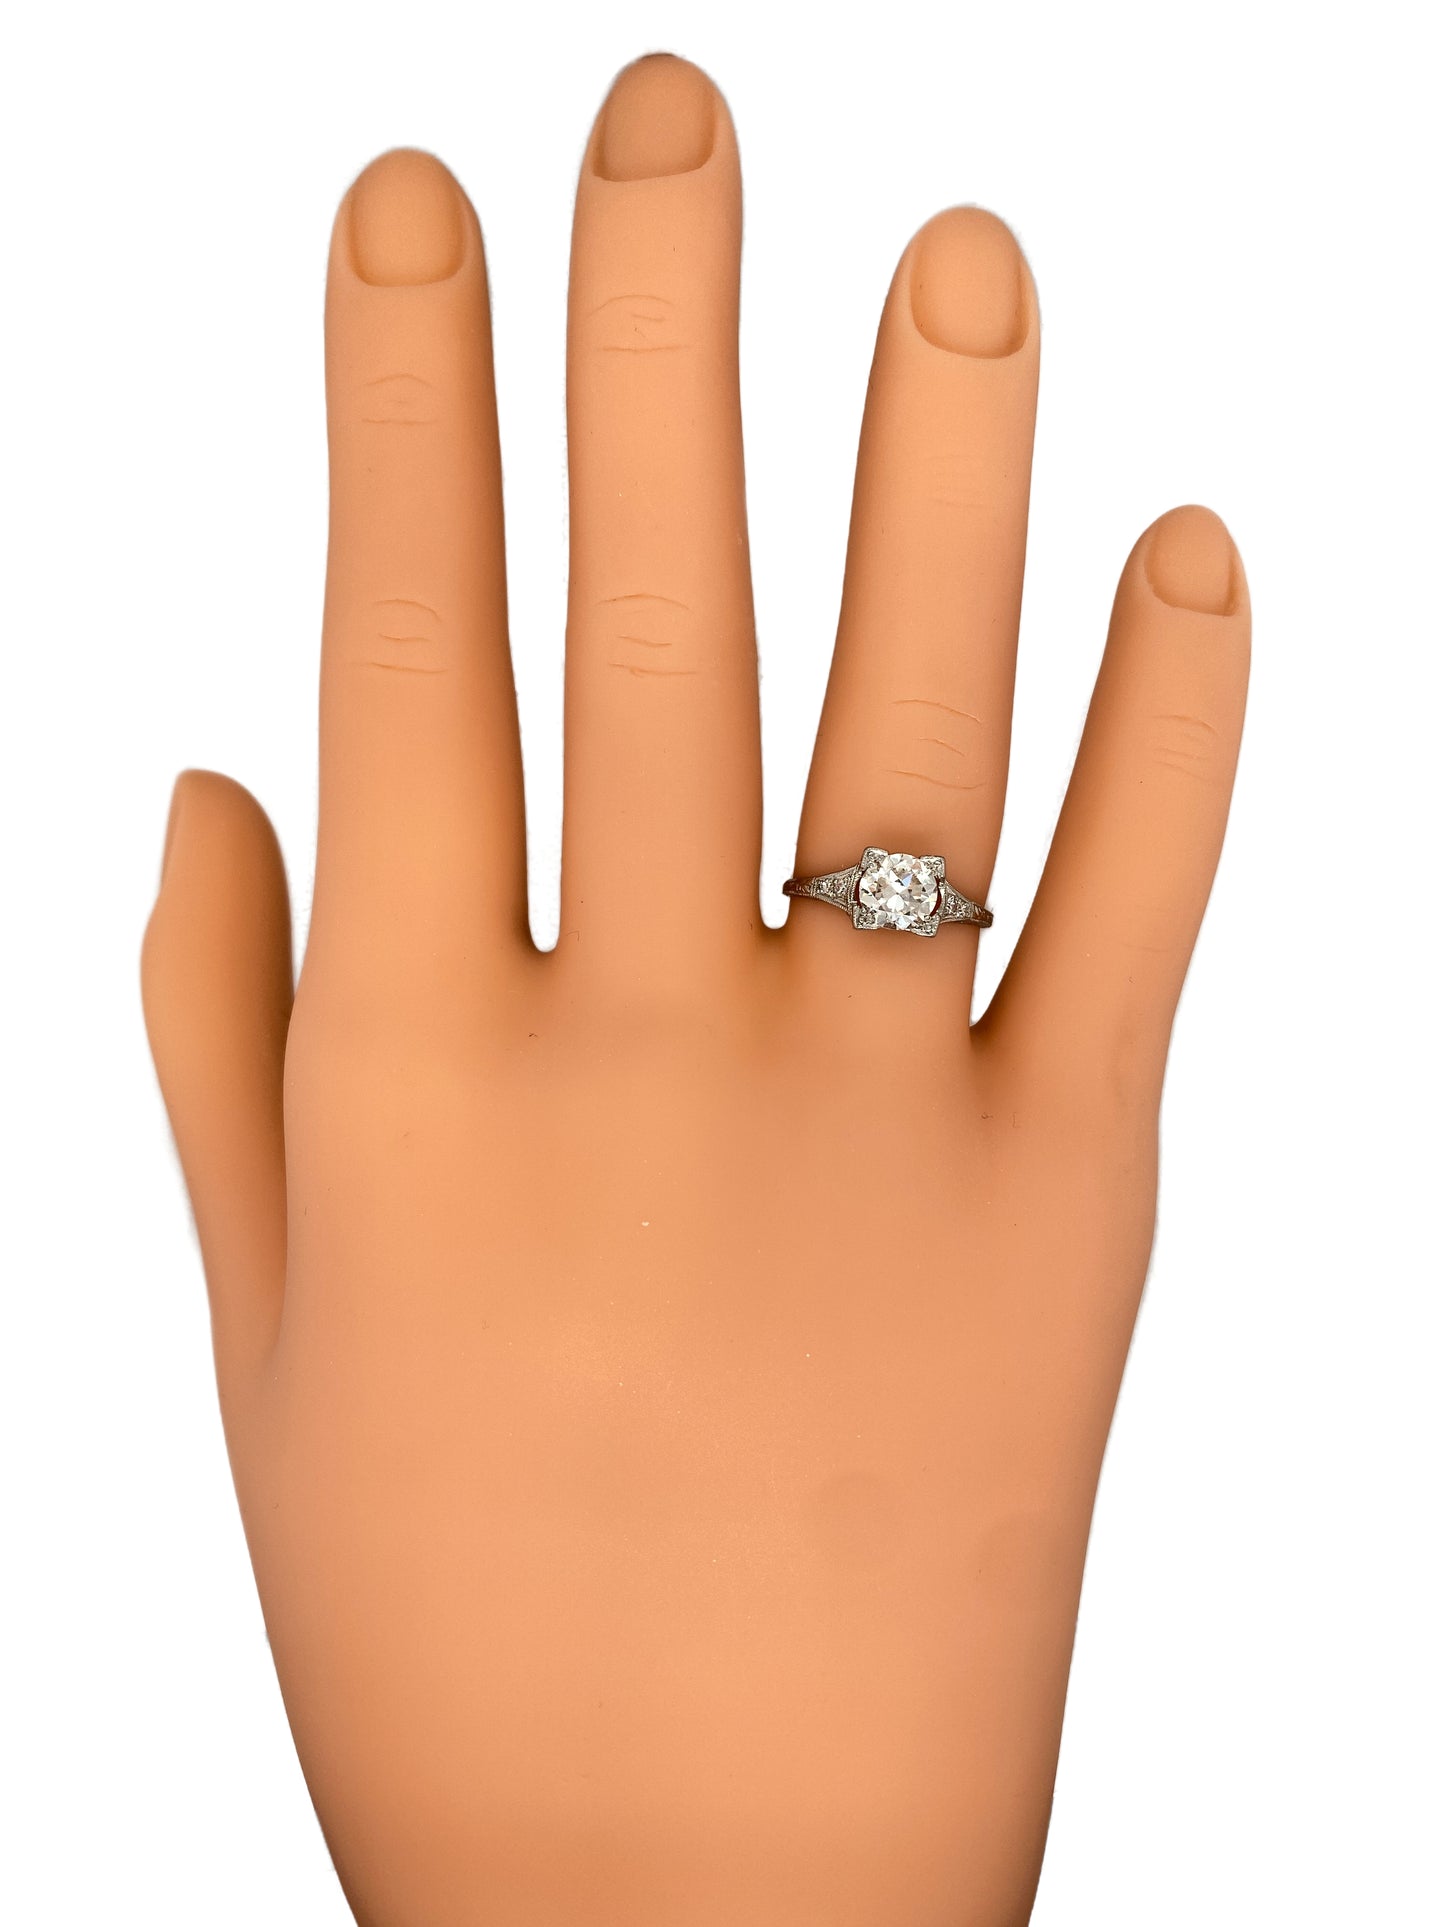 Circa 1920s Art Deco 1.08 Carat Diamond Engagement Ring in Platinum